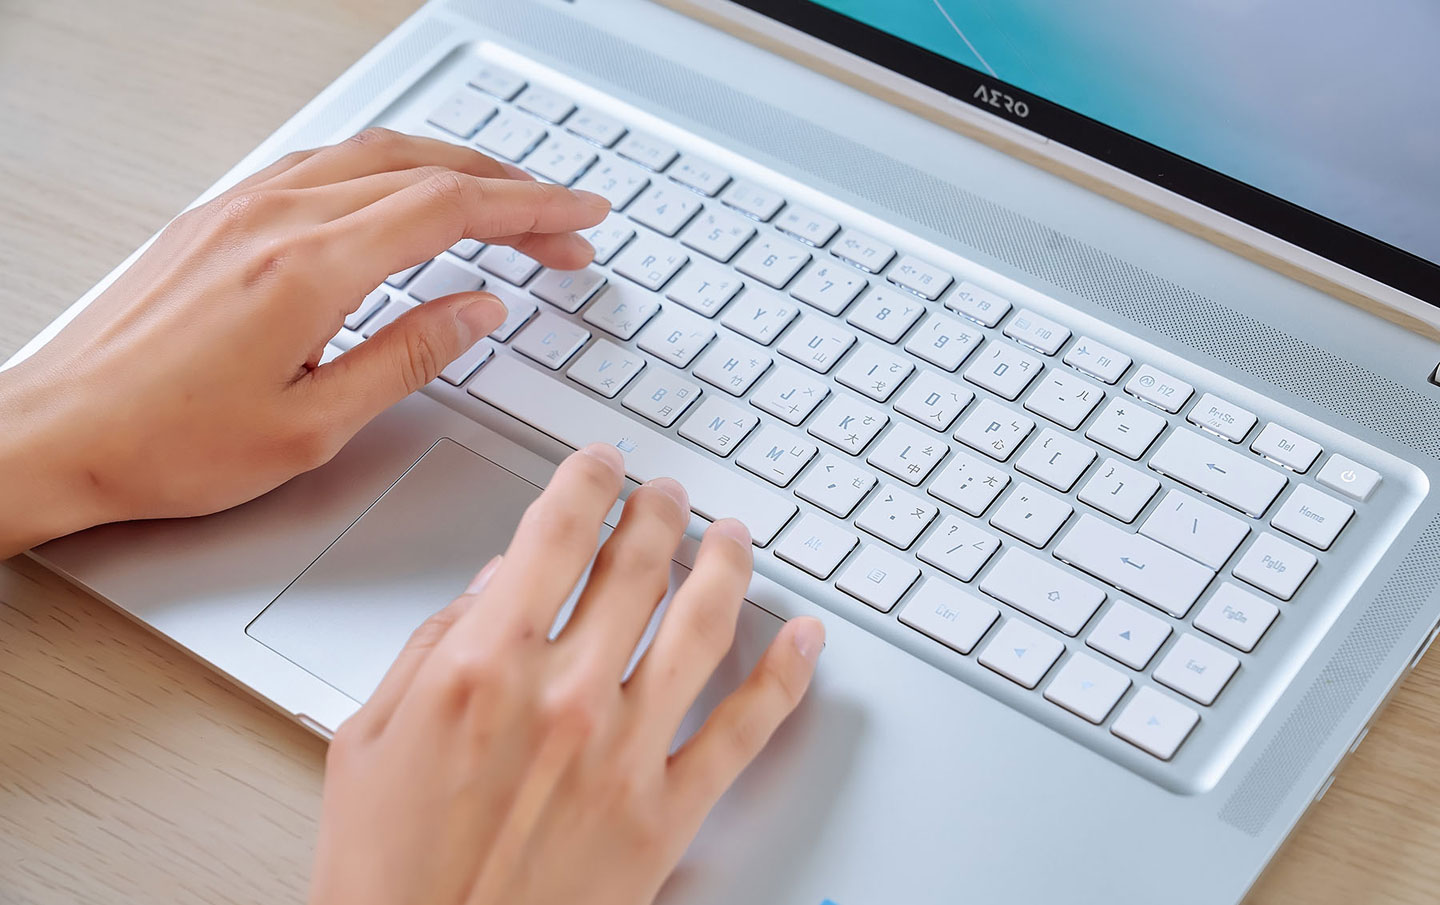 AERO 16 OLED 的鍵盤擁有 1.7 mm 的長鍵程，打時的回饋感合宜，使用起來非常舒適。